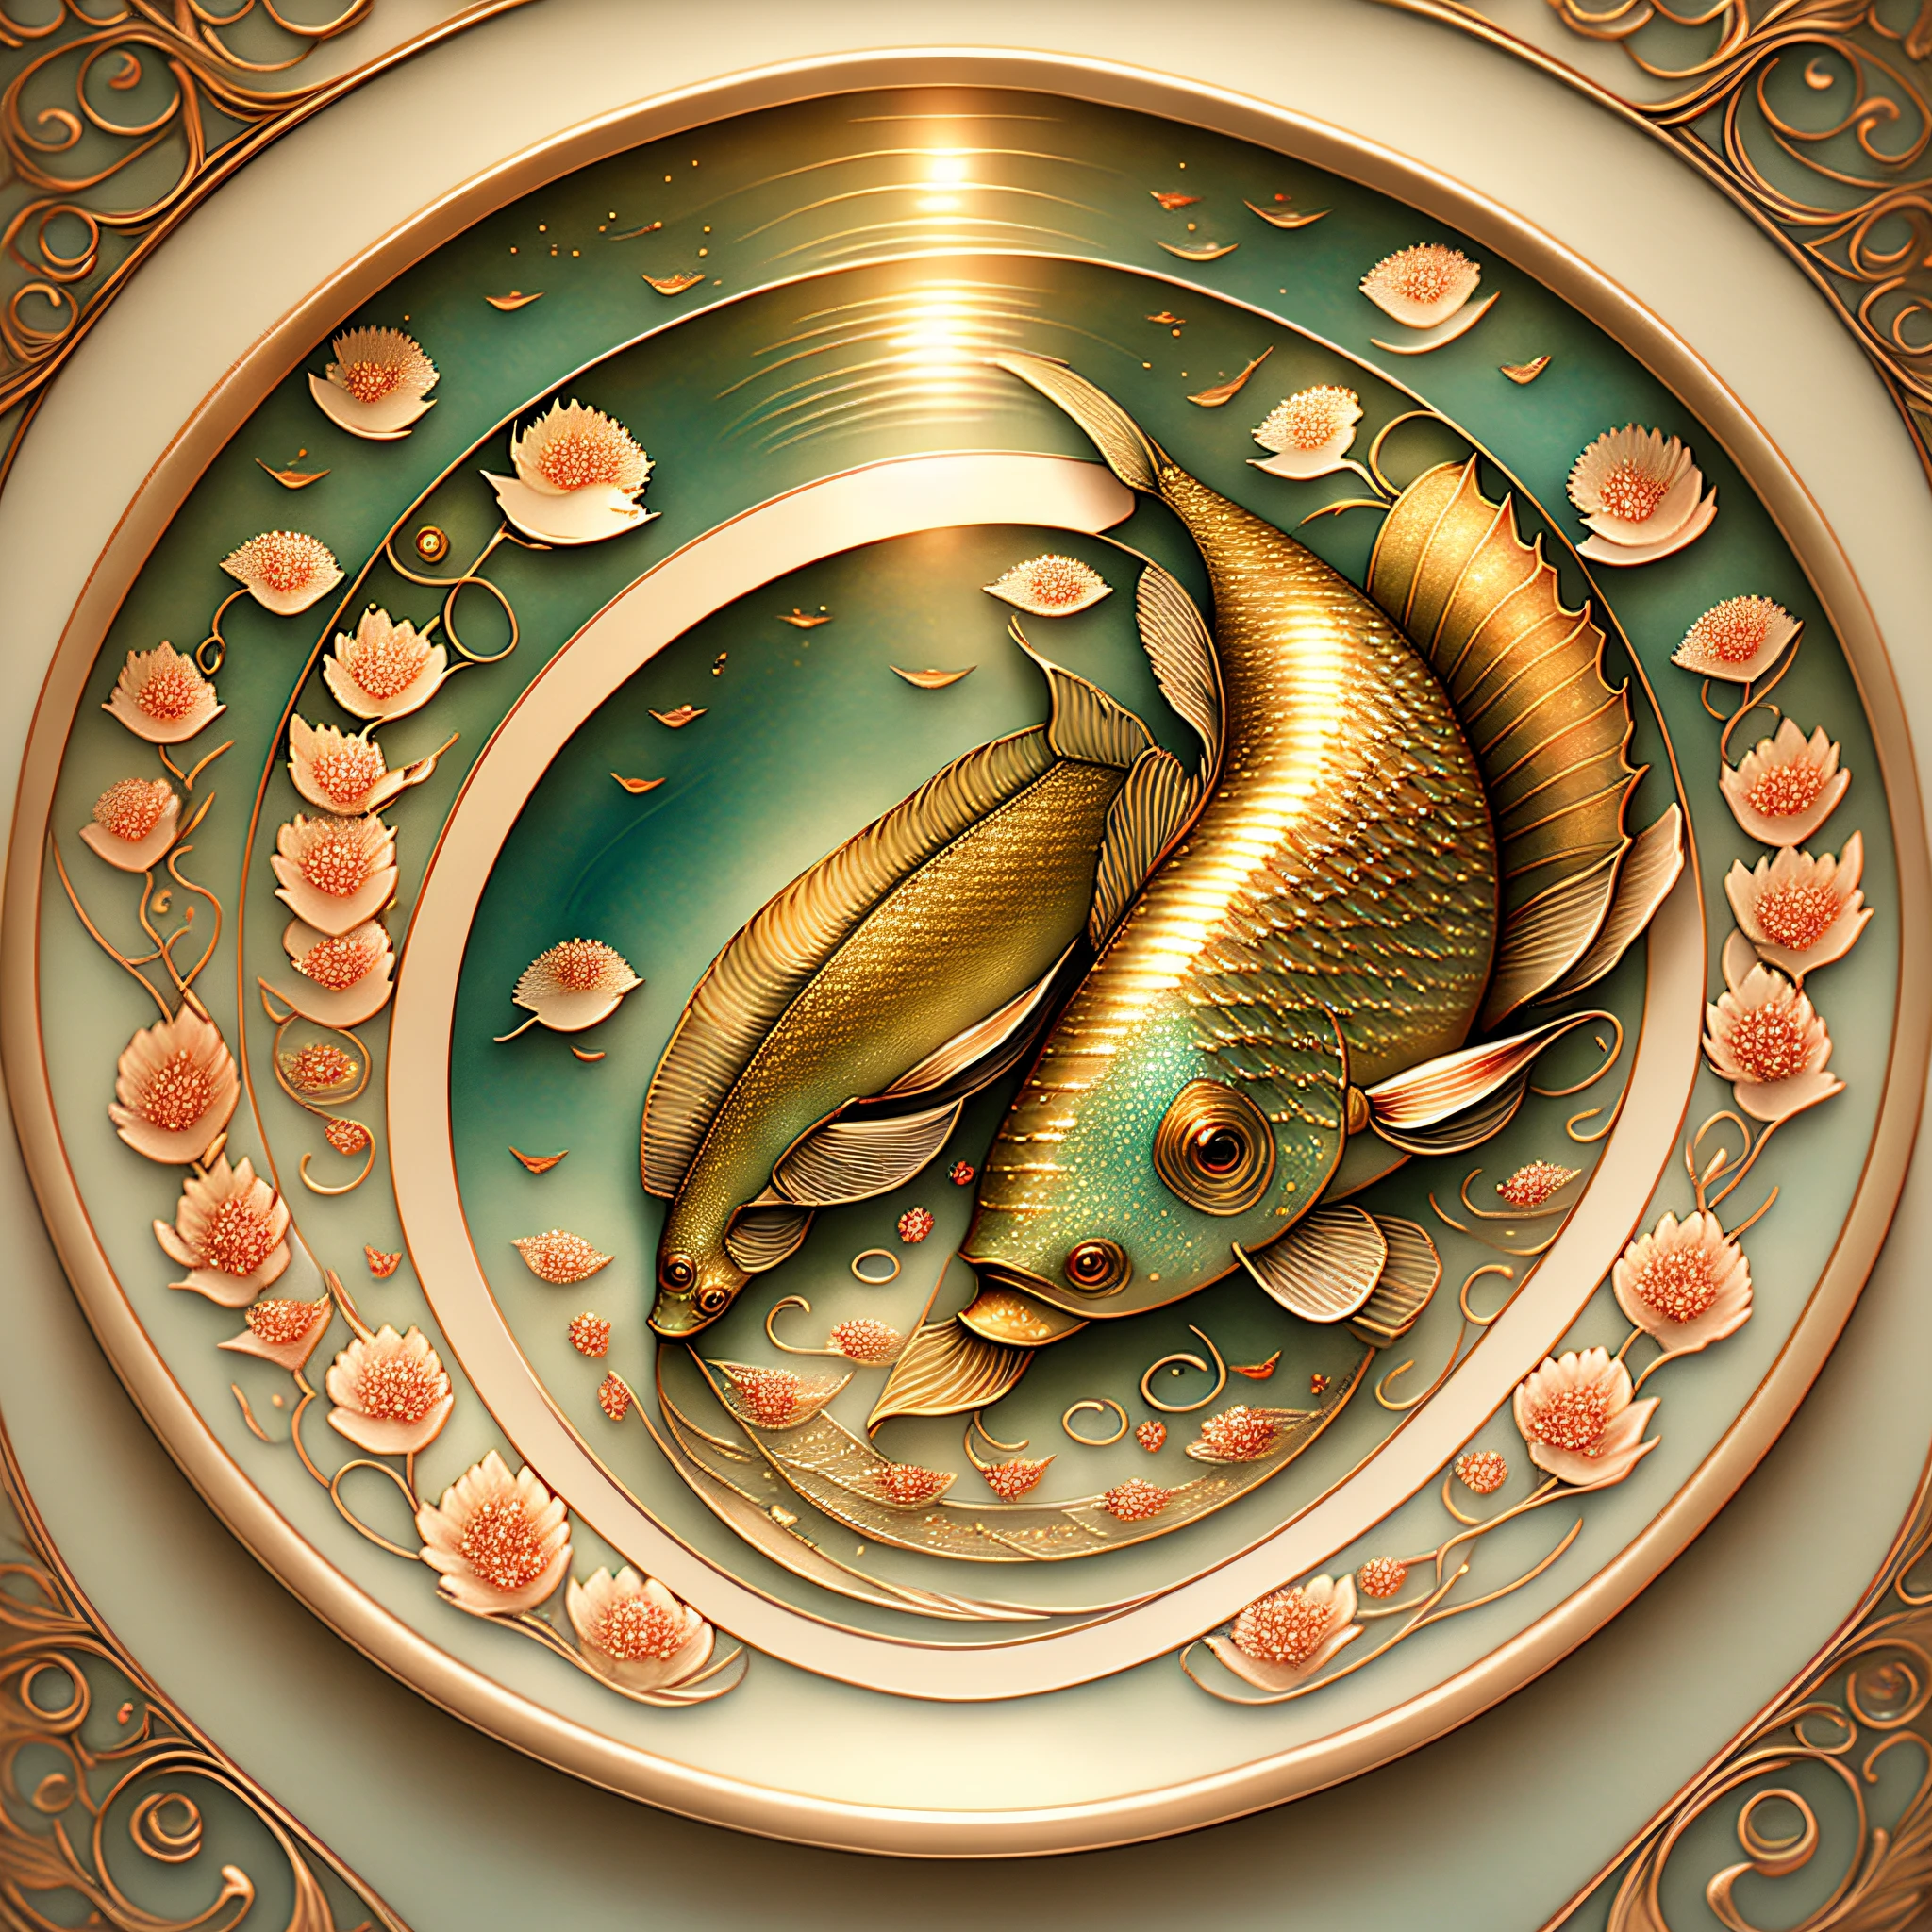 兩條美麗的鯉魚在水中游動, 見面, 錯綜複雜的細節, 令人惊叹的效果图, 在輻射連接中, 靈感來自 Kinuko Y. 工藝, 魔法元素, 鯉魚圖標,